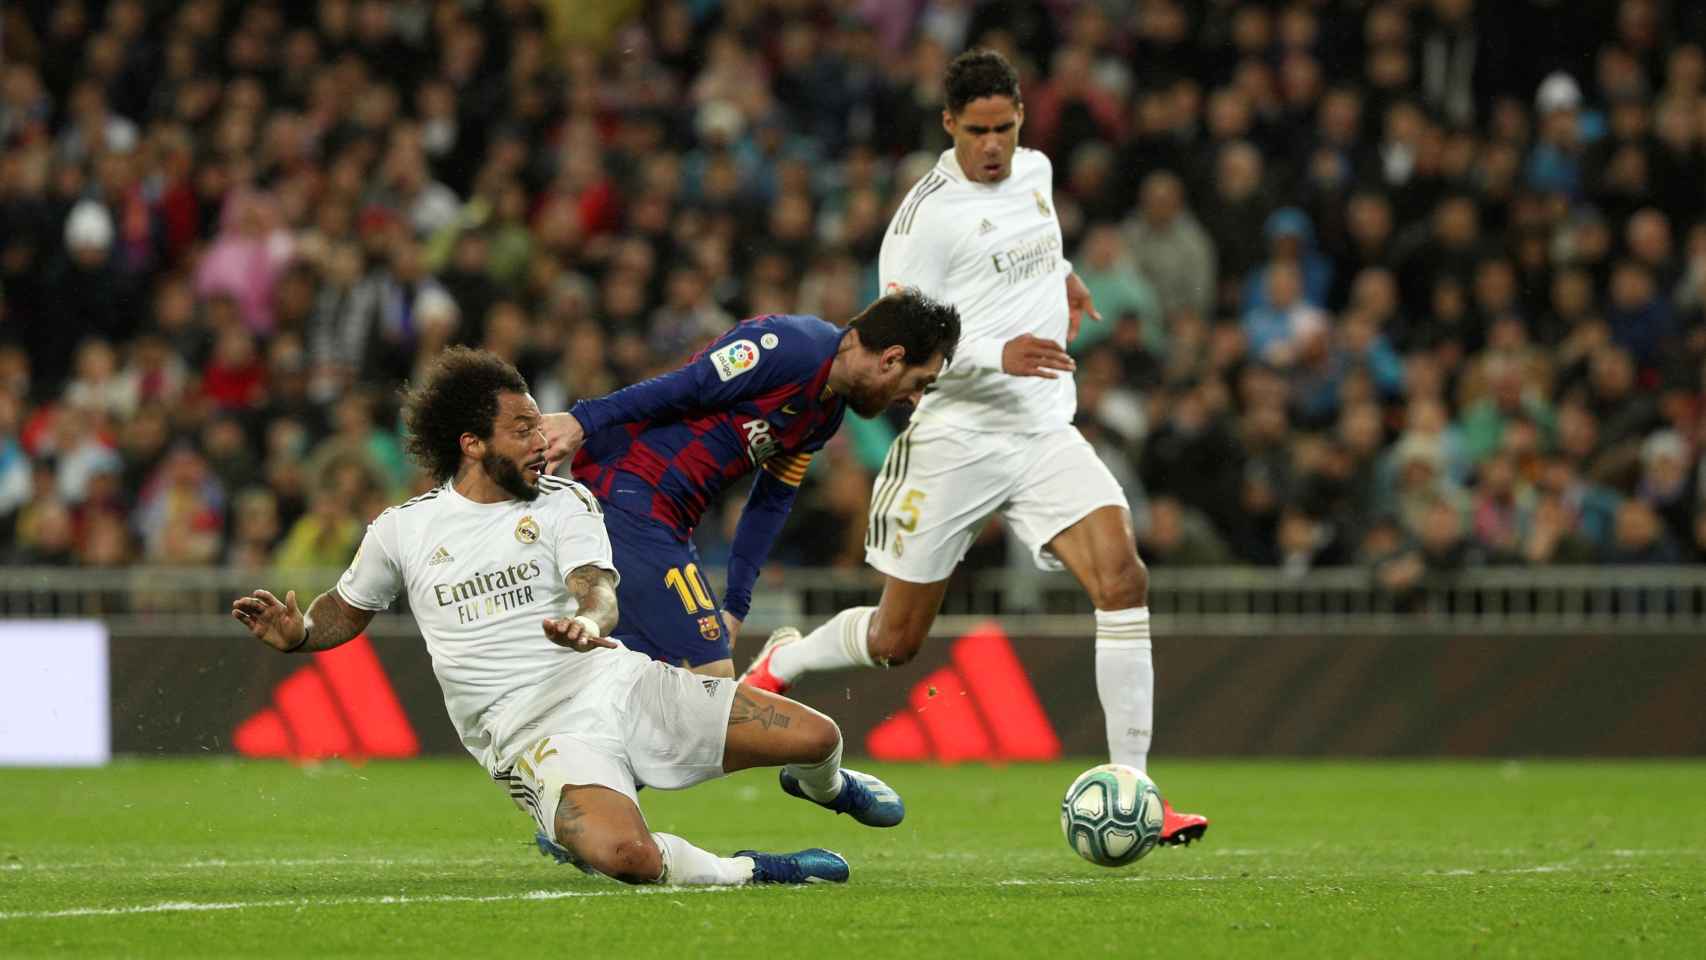 El corte providencial de Marcelo ante Messi